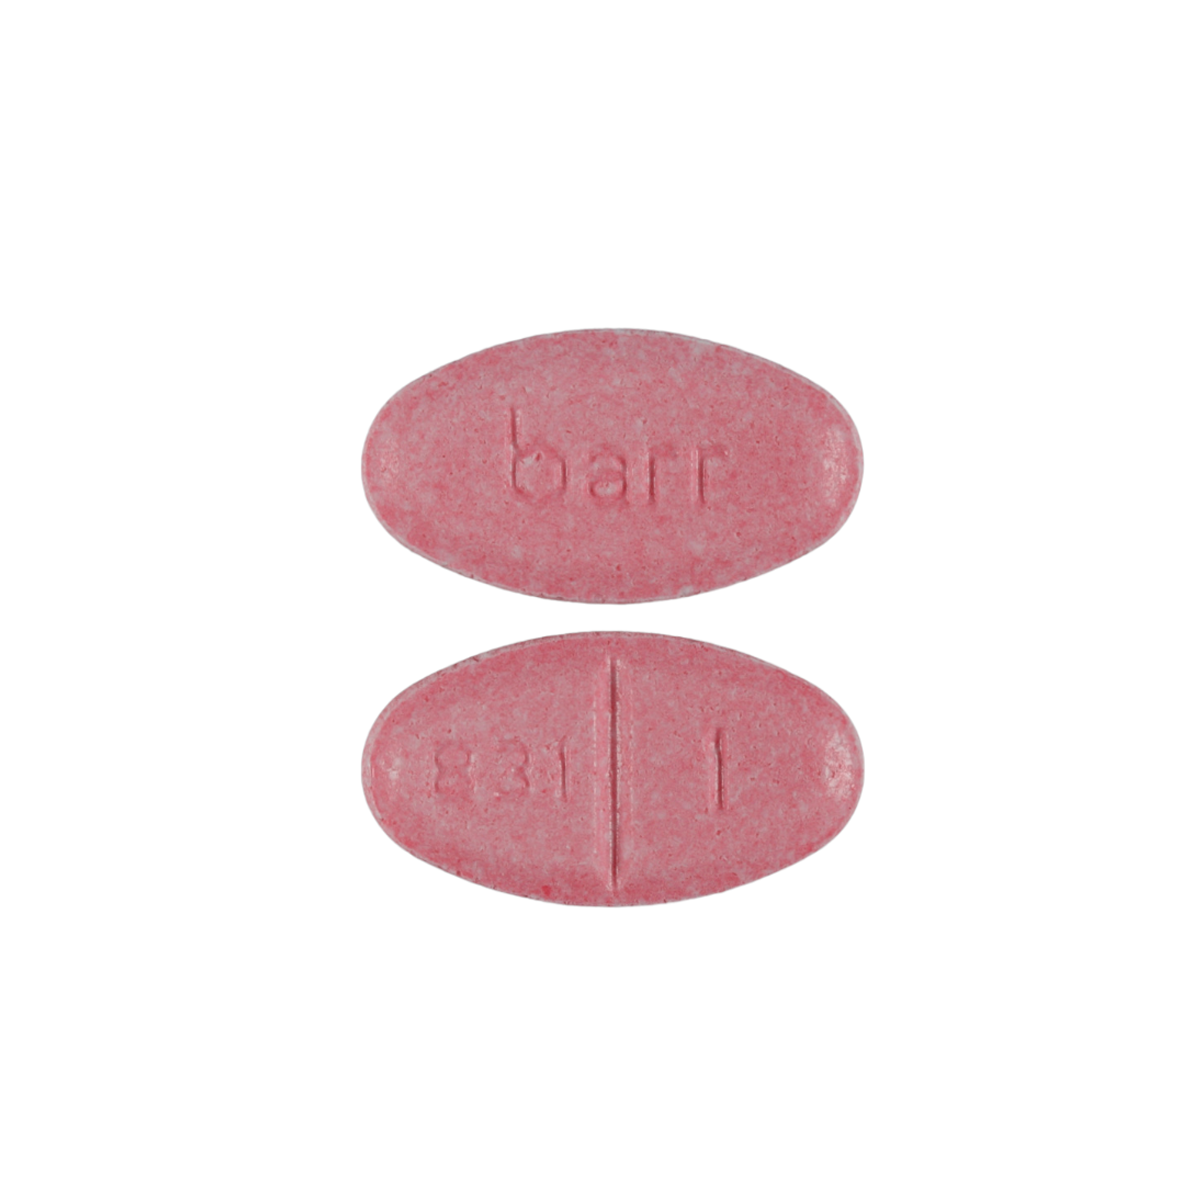 Warfarin (COUMADIN)